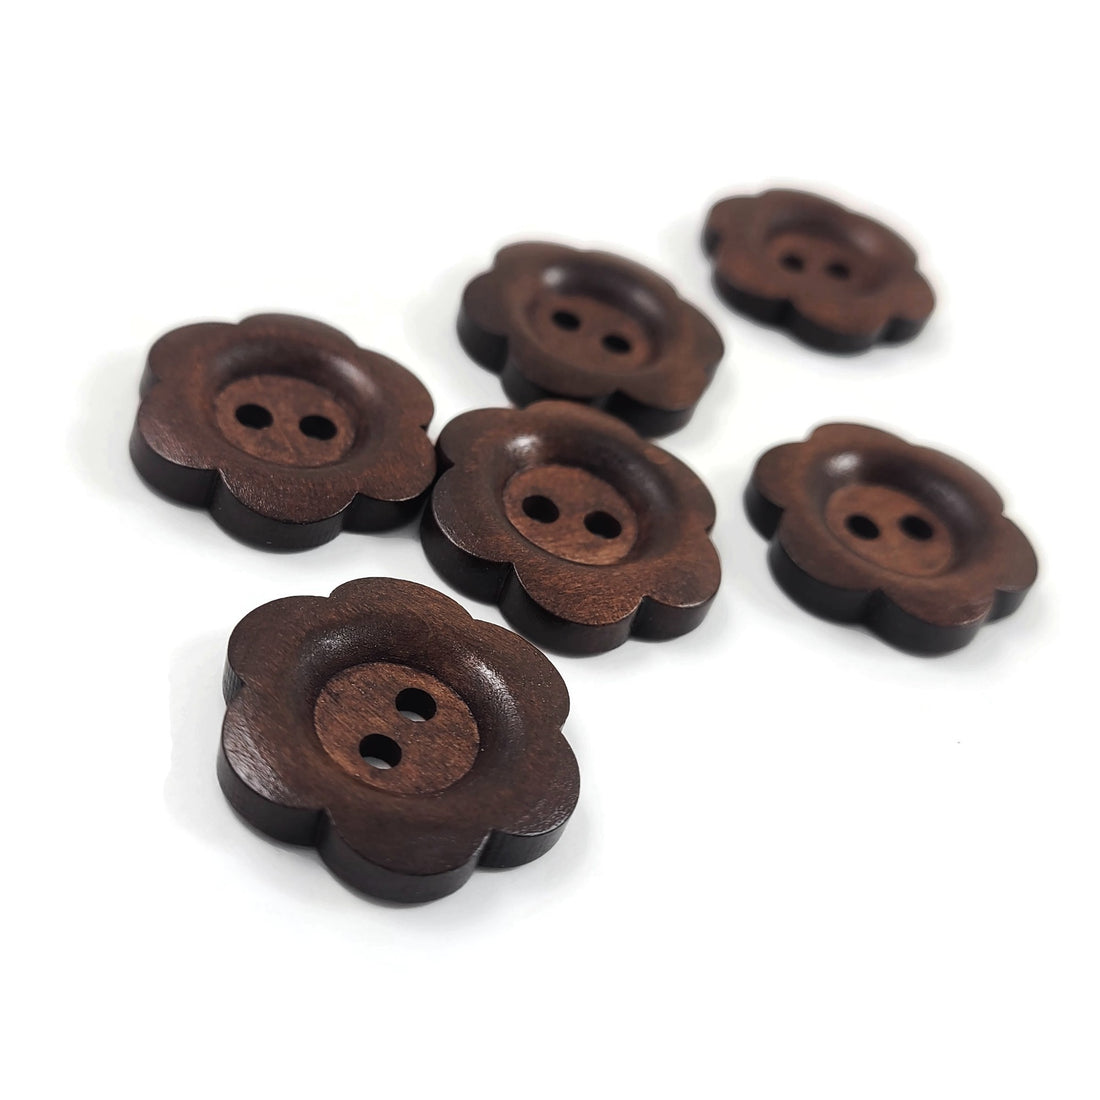 6 boutons de bois brun foncé fleur 25mm